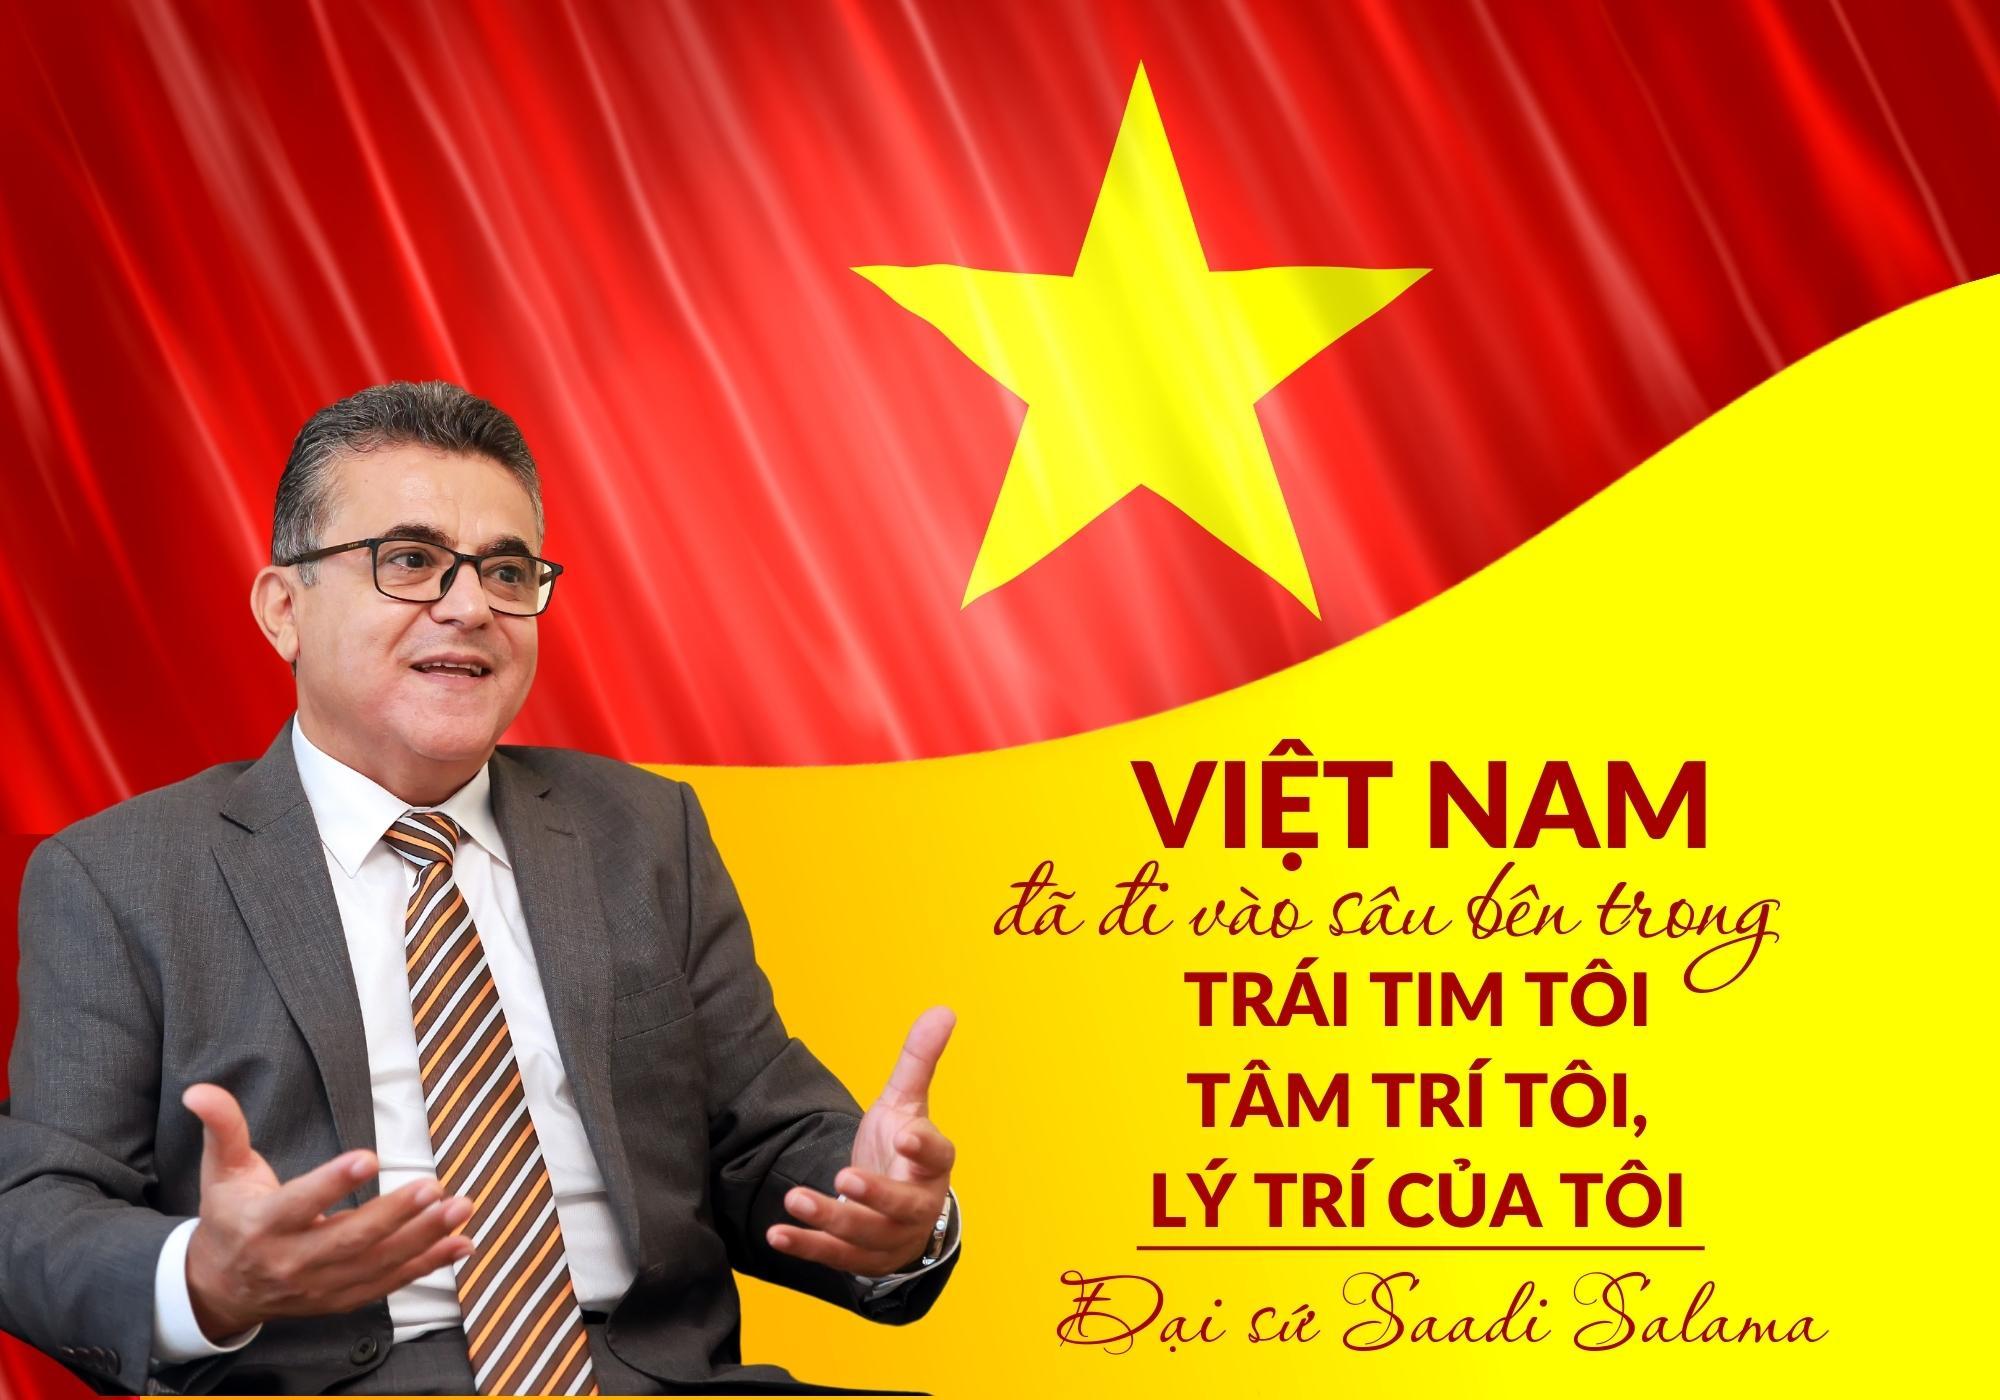 Đại sứ Saadi Salama: Việt Nam đã đi vào sâu bên trong trái tim tôi, tâm trí tôi, lý trí của tôi